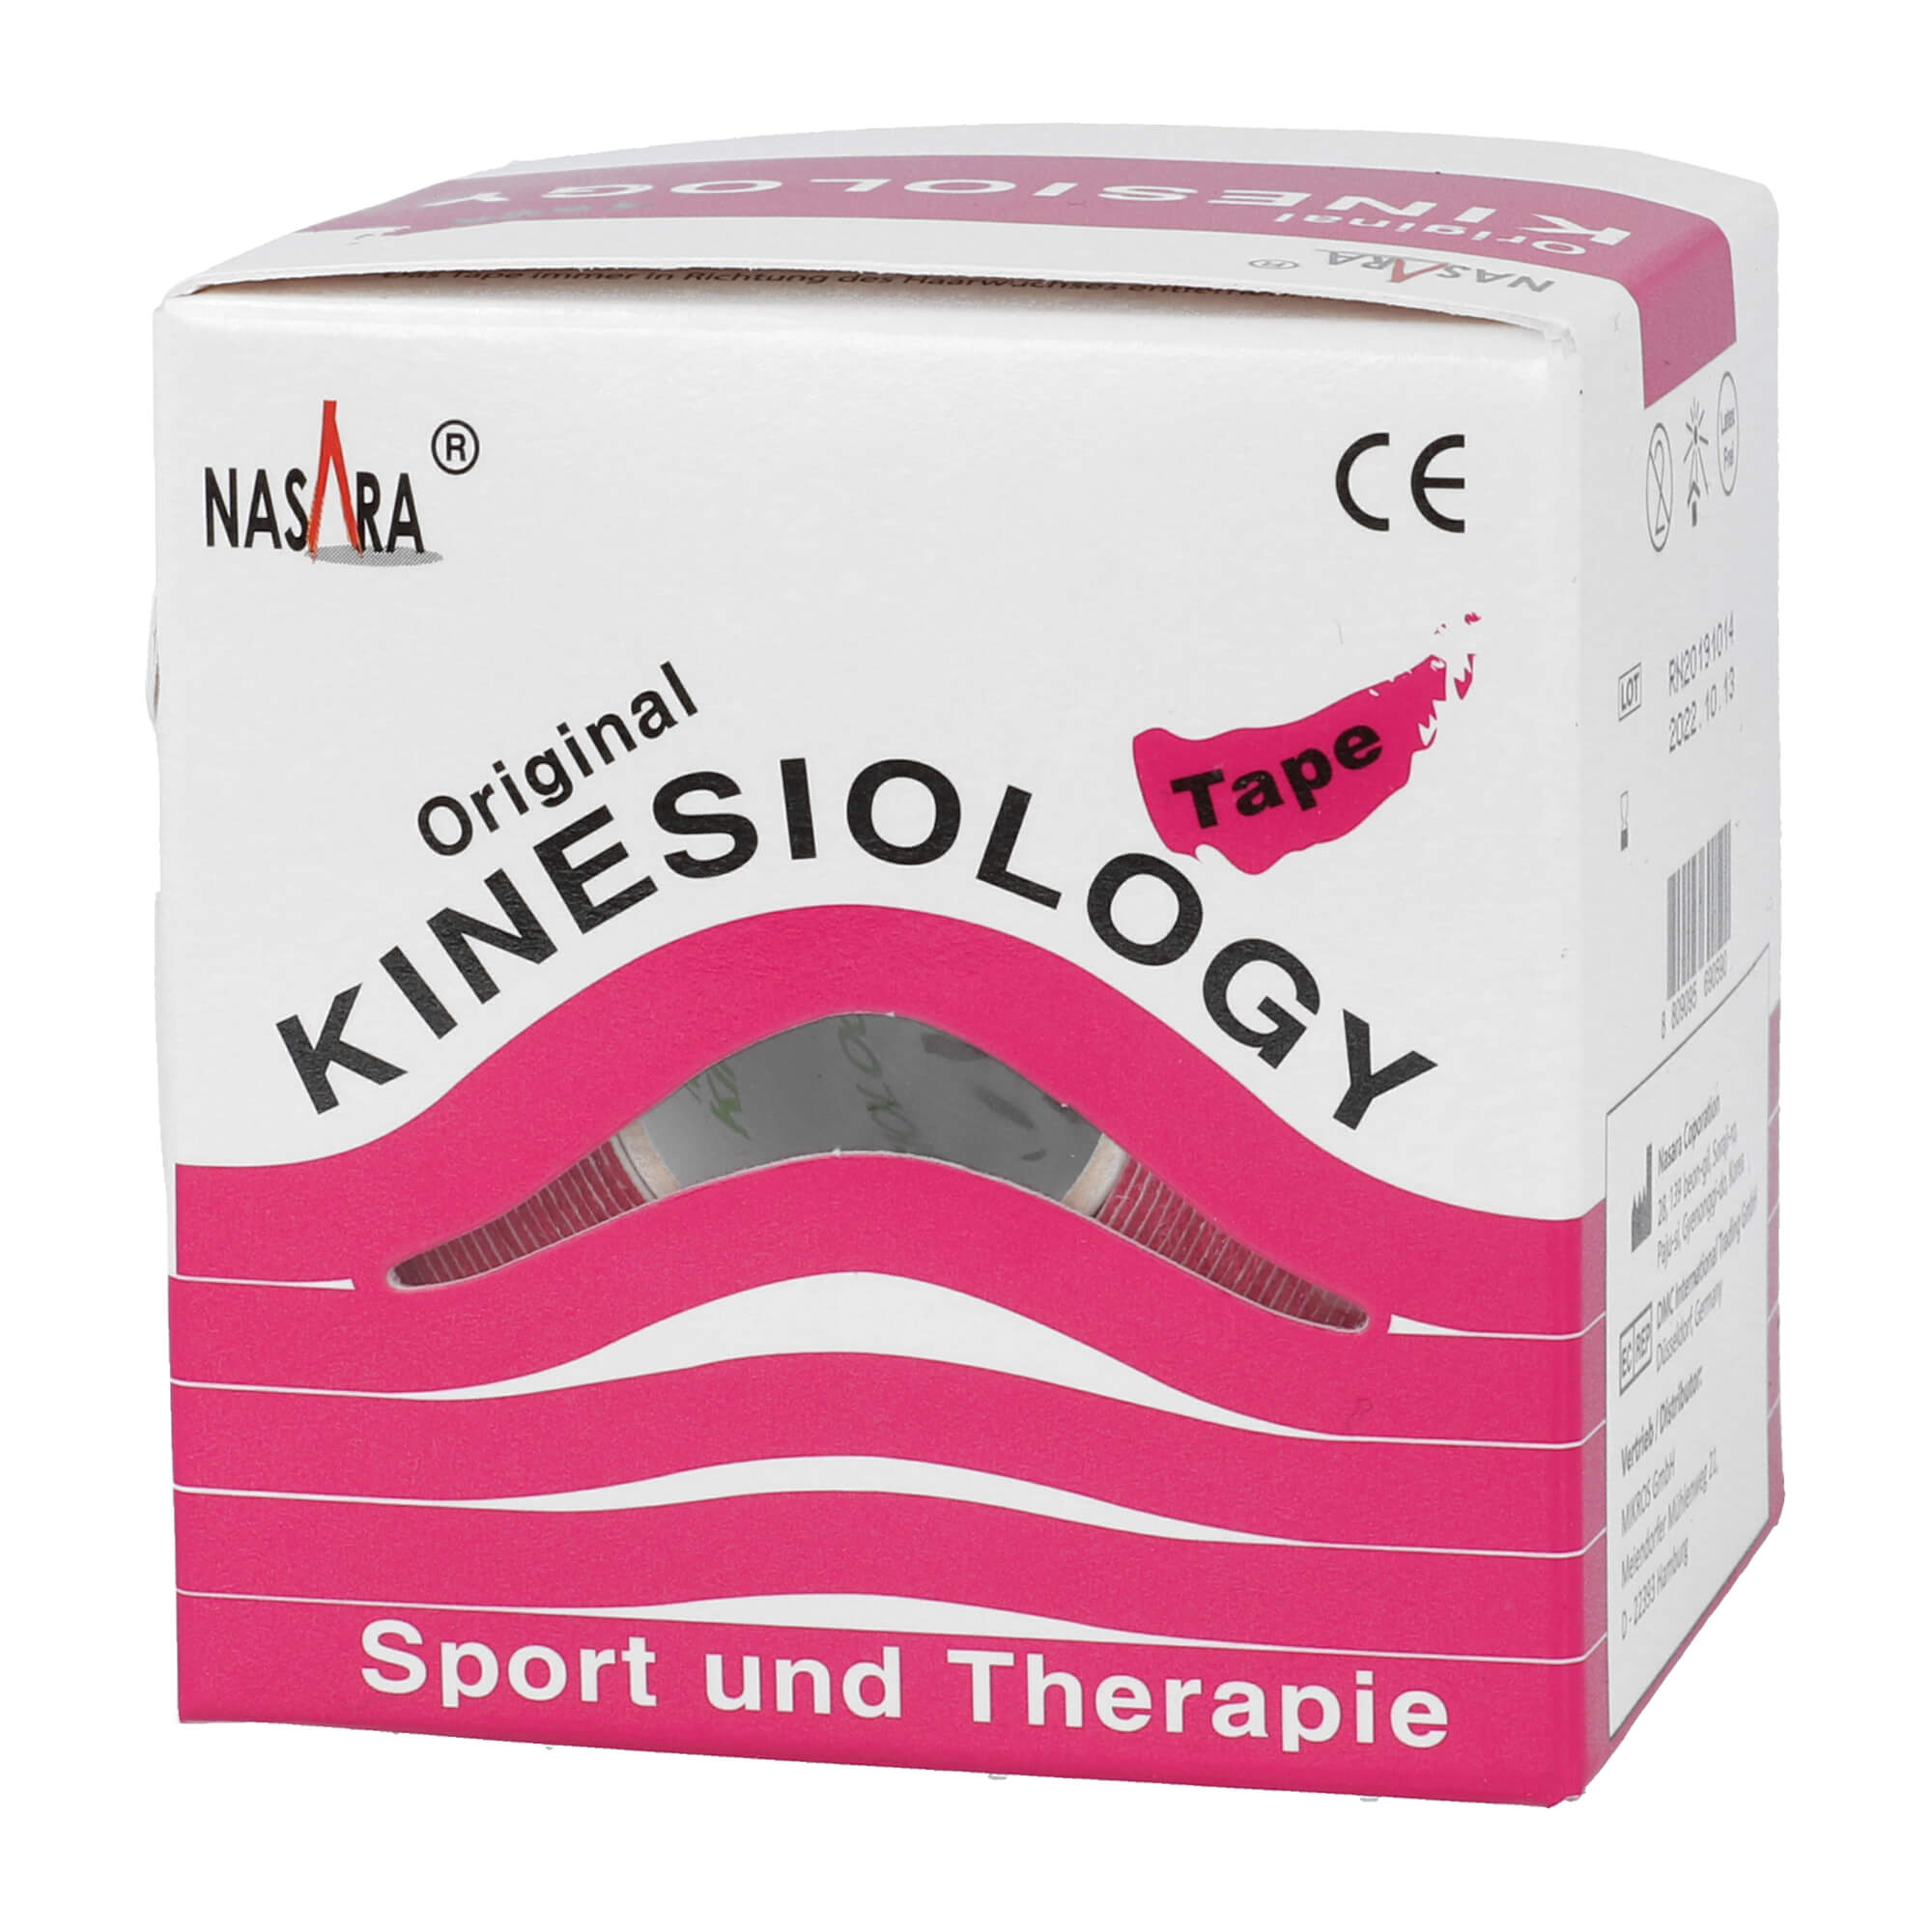 Kinesiology Tape für Sport und Therapie. Farbe: pink.